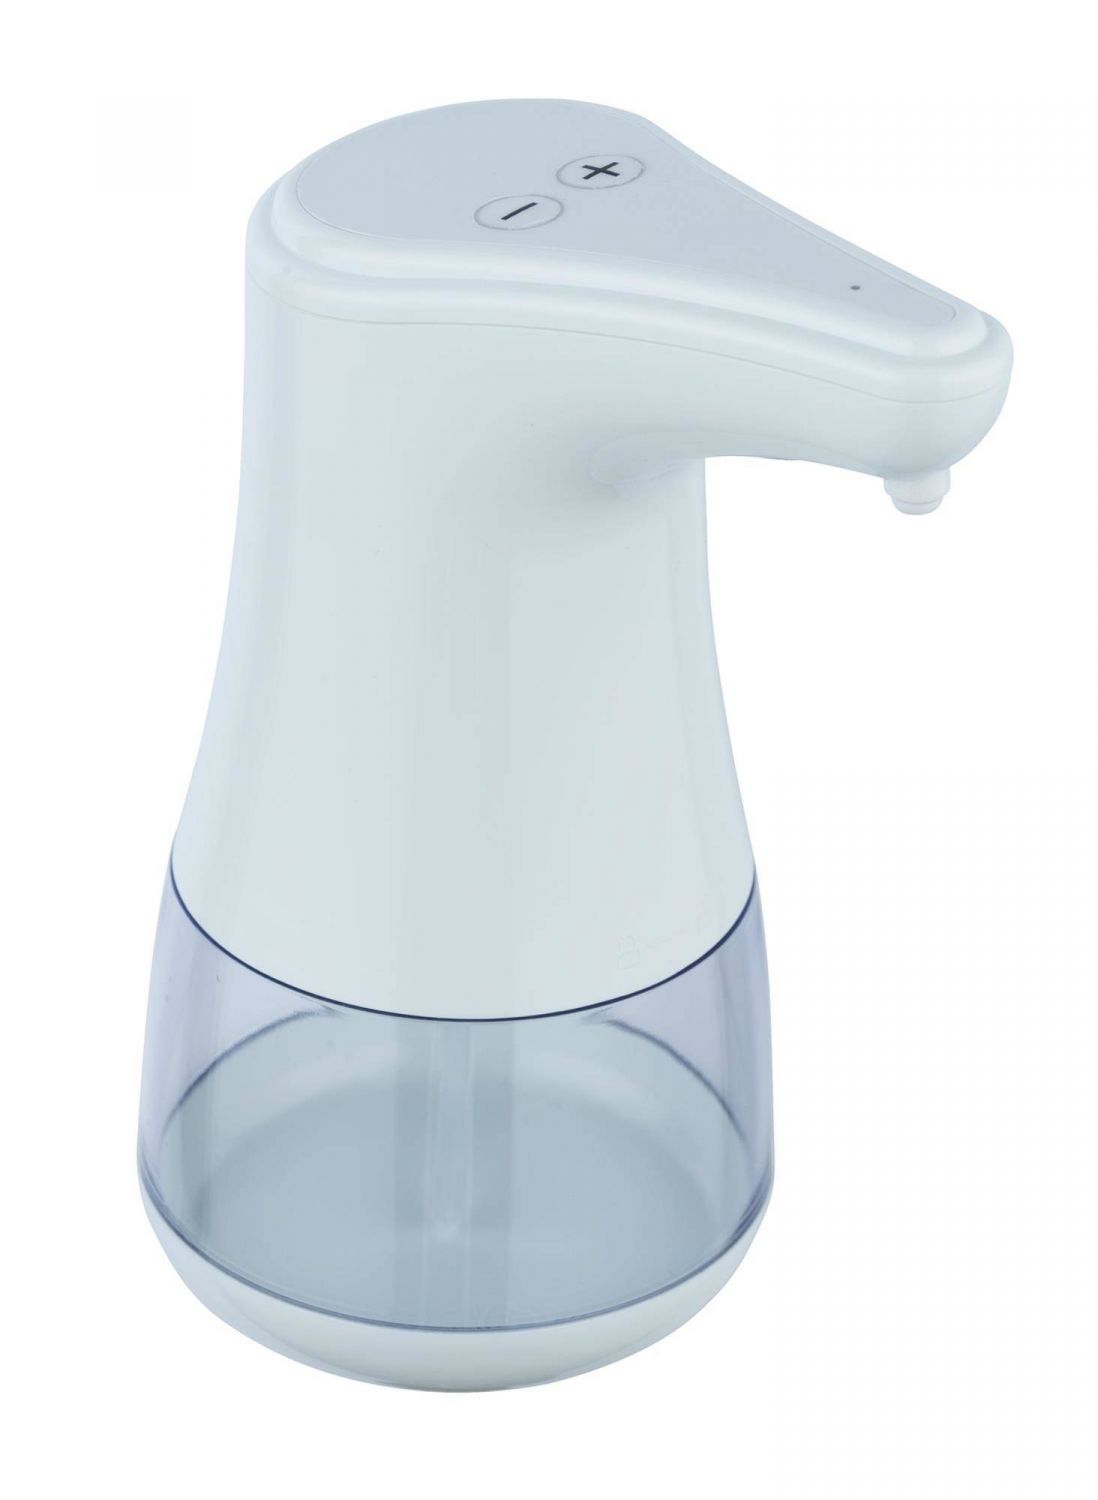 Bezdotykový dávkovač mýdla a tekuté dezinfekce DIALA, s infračerveným senzorem, bílá, 360 ml, Wenko - EMAKO.CZ s.r.o.